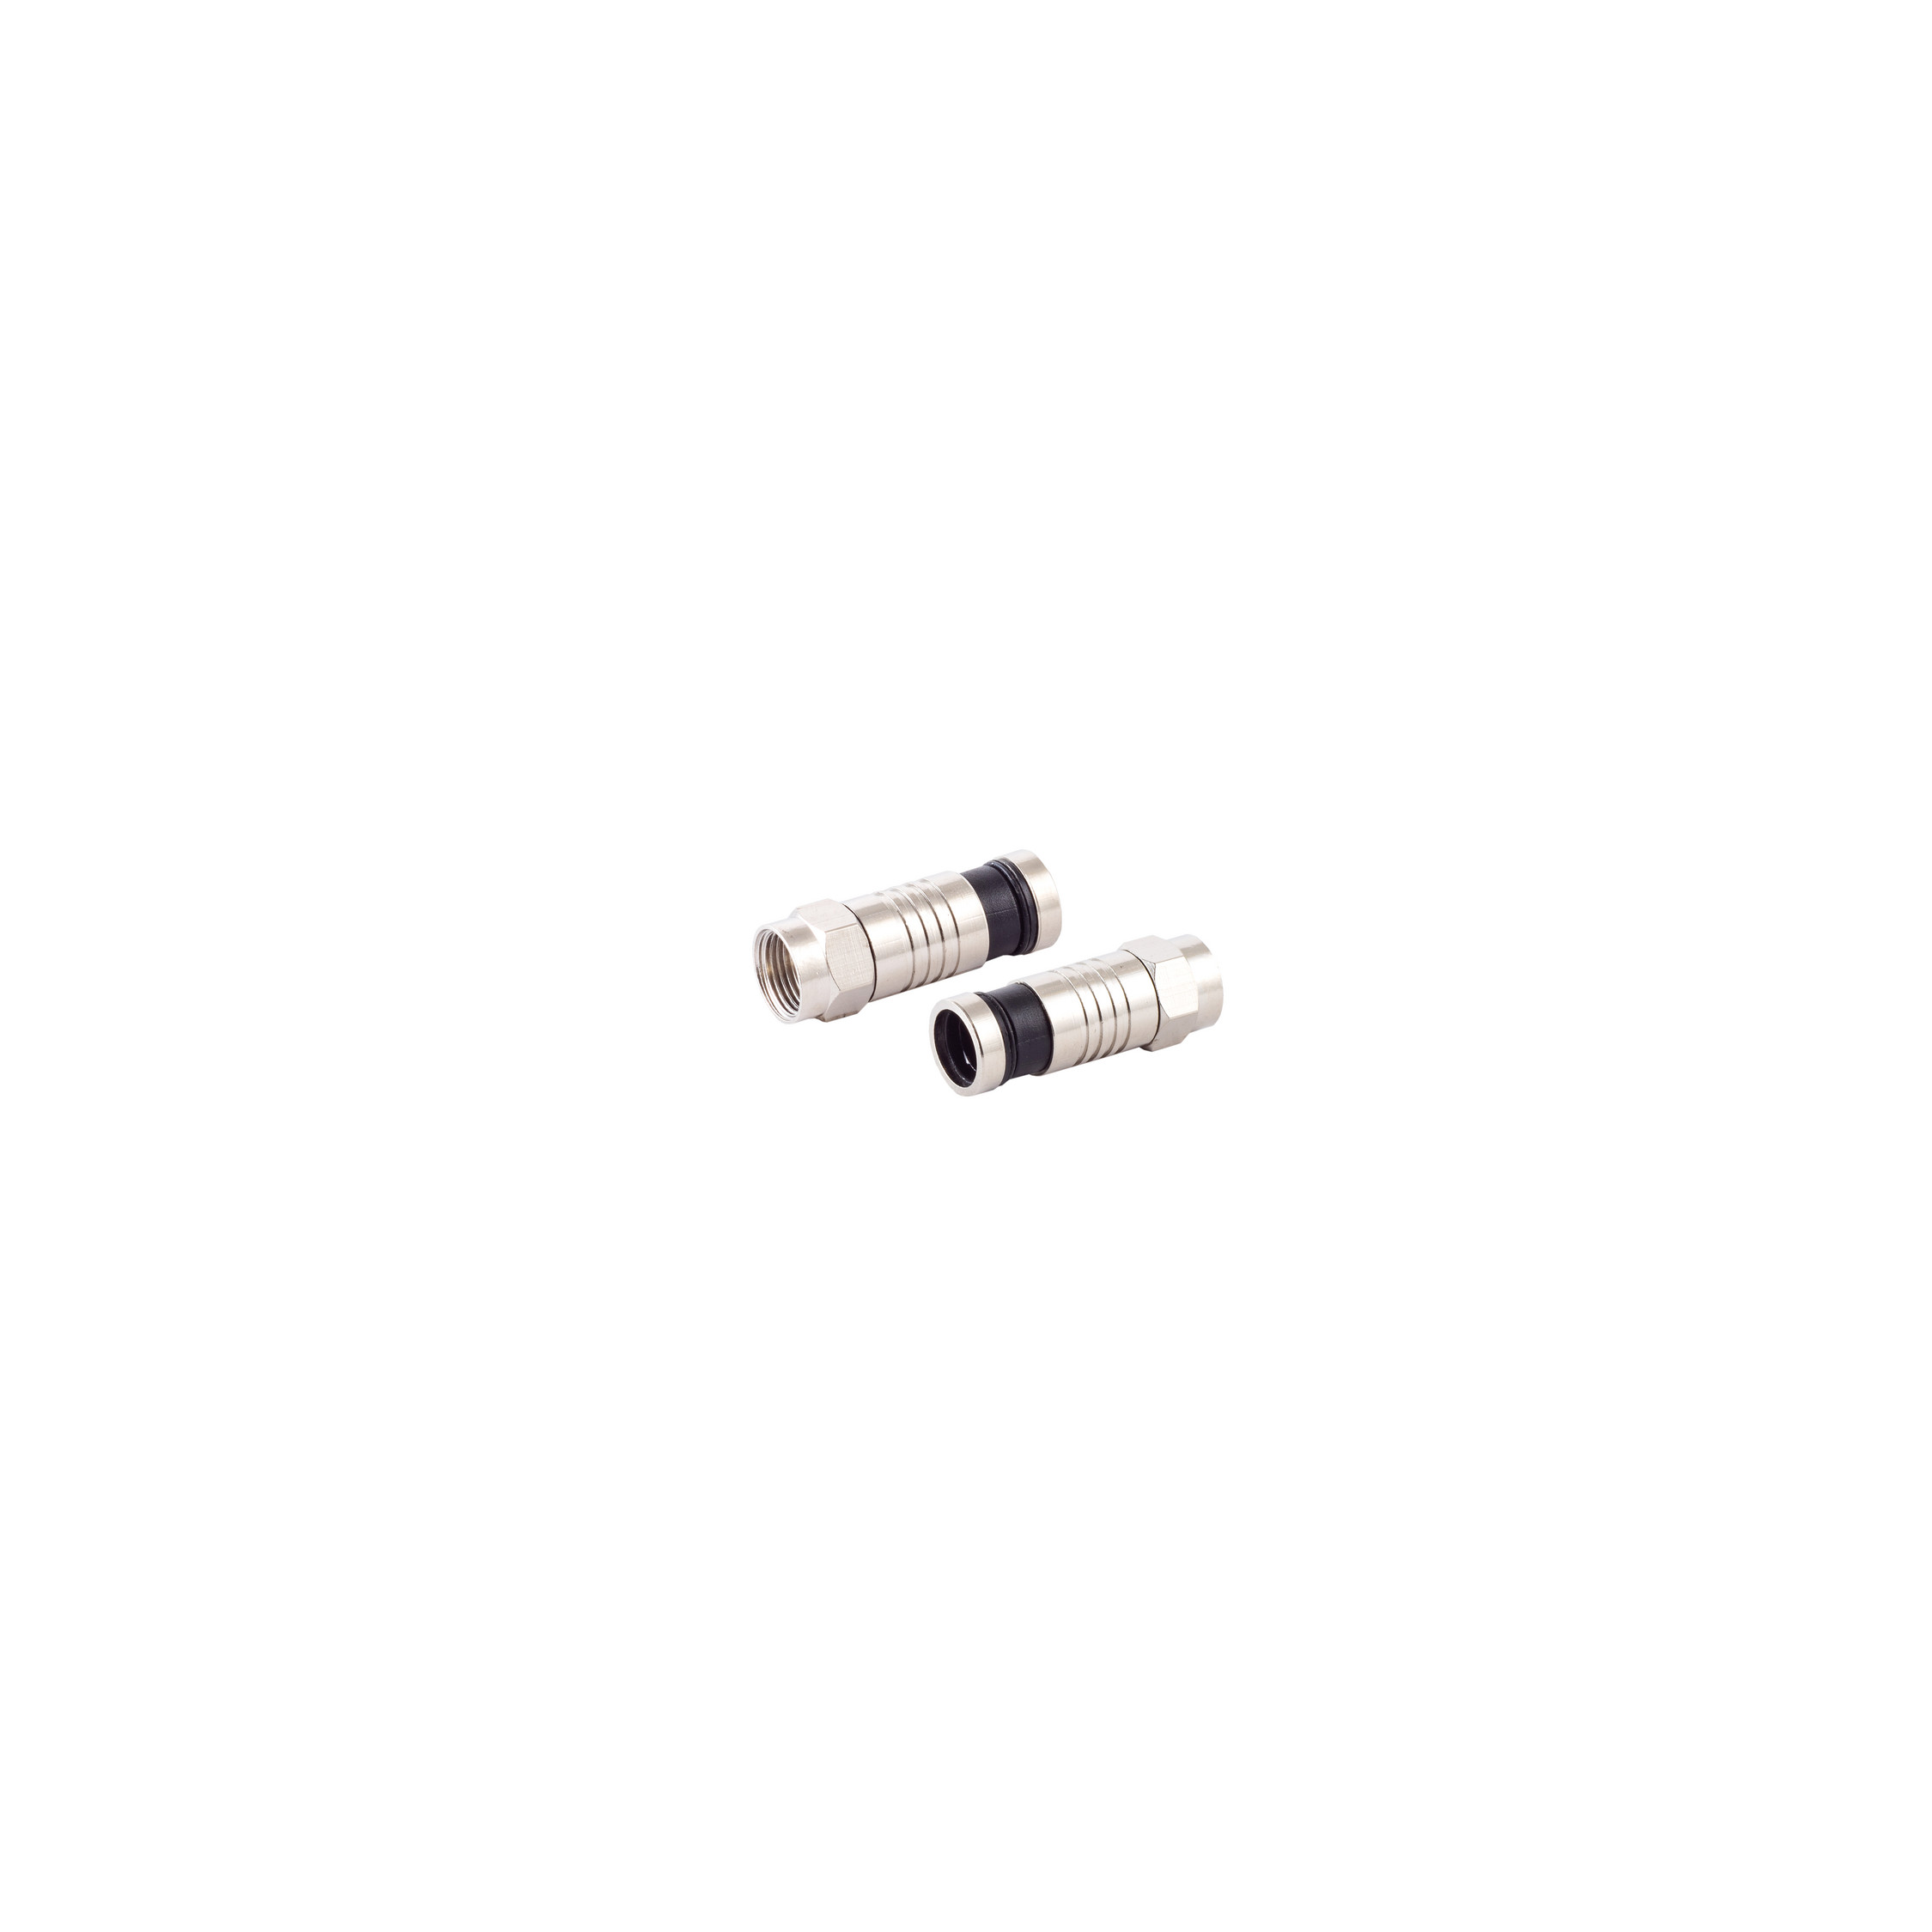 S/CONN MAXIMUM CONNECTIVITY F-Kompressionsstecker für SAT 7,2mm Kabel & Adapter Stecker